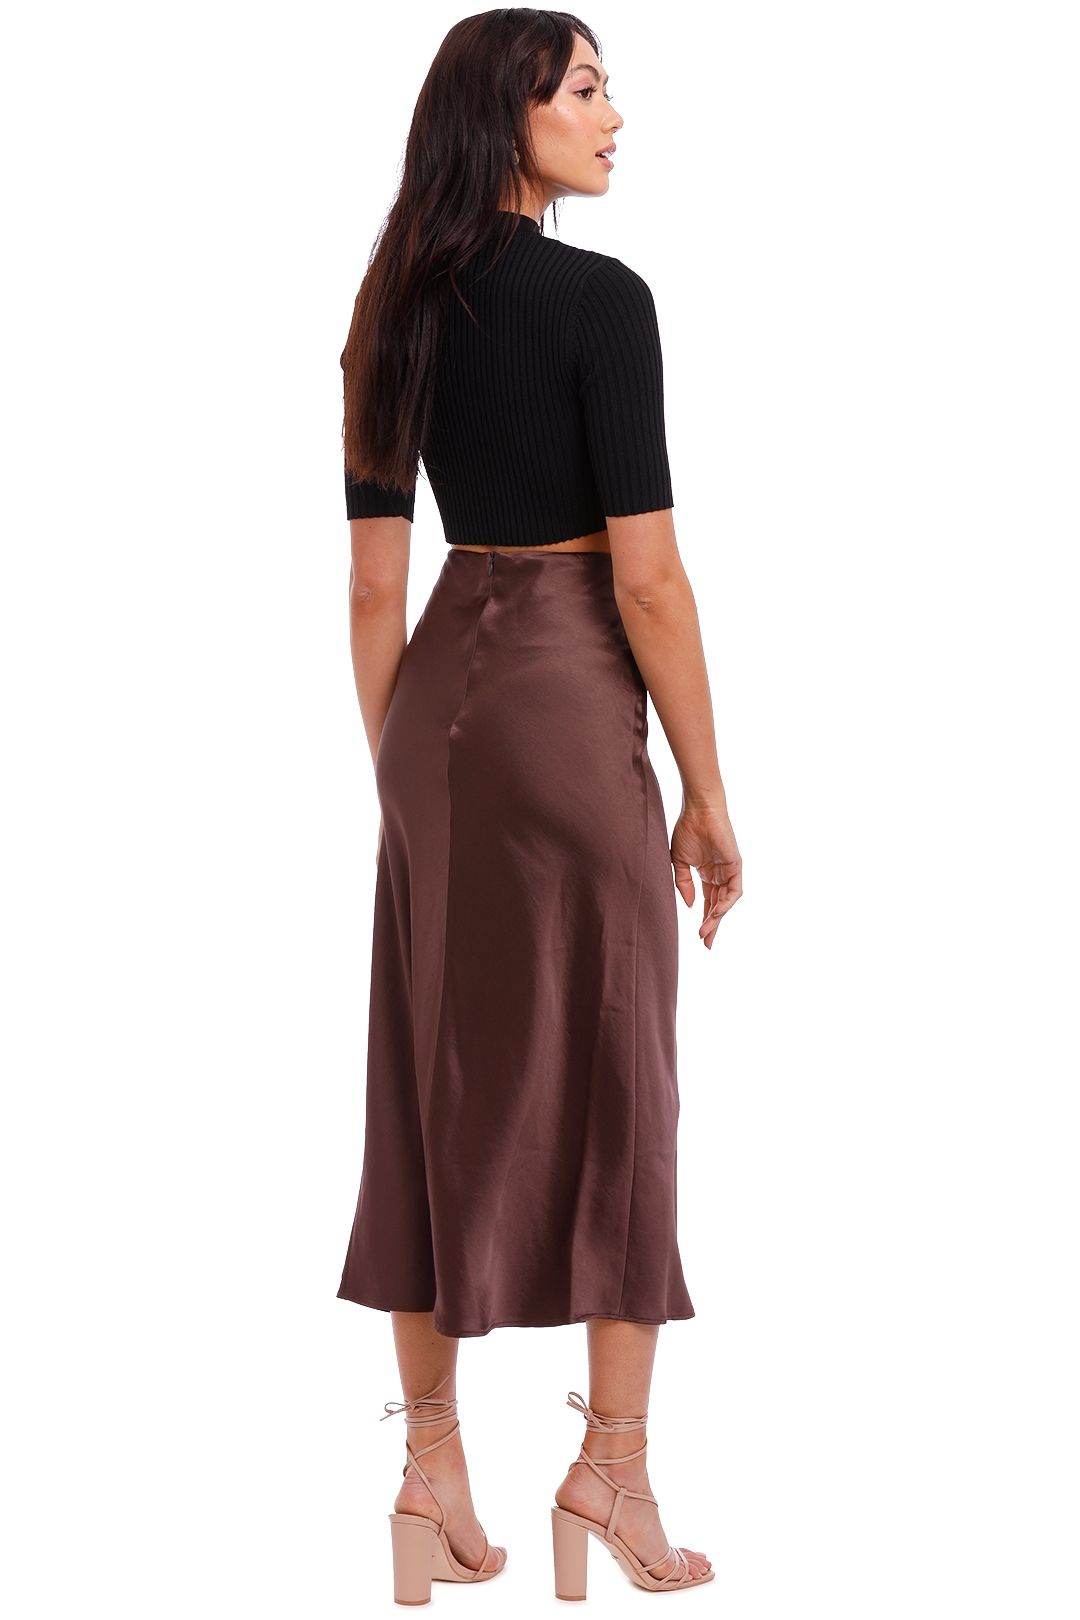 Jillian Boustred Scarlet Slip Skirt Chocolate brown